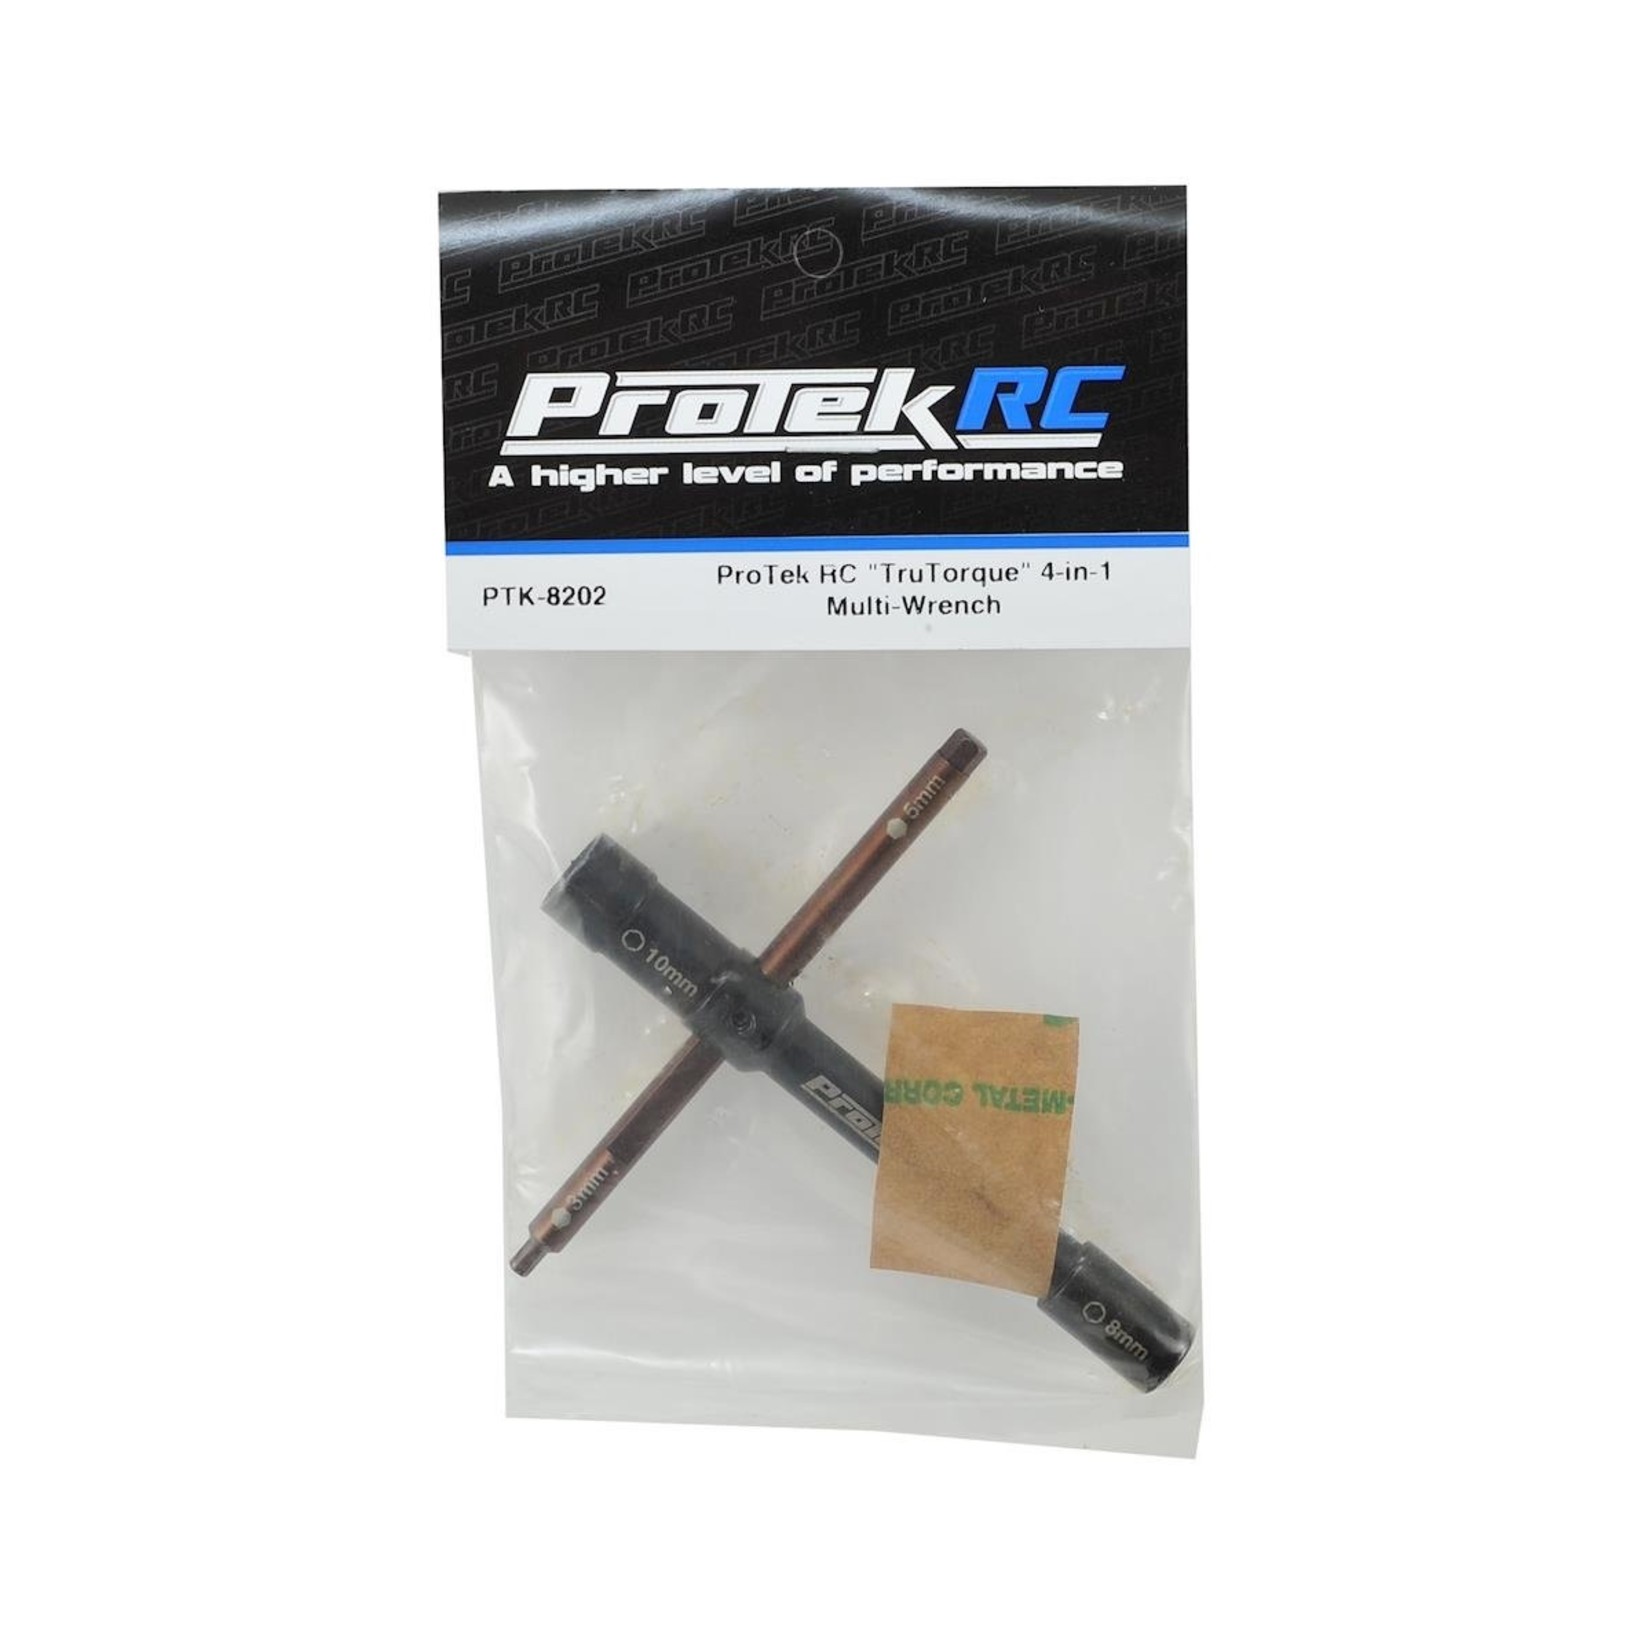 Protek R/C PTK-8202 ProTek RC "TruTorque" 4-in-1 Multi-Wrench